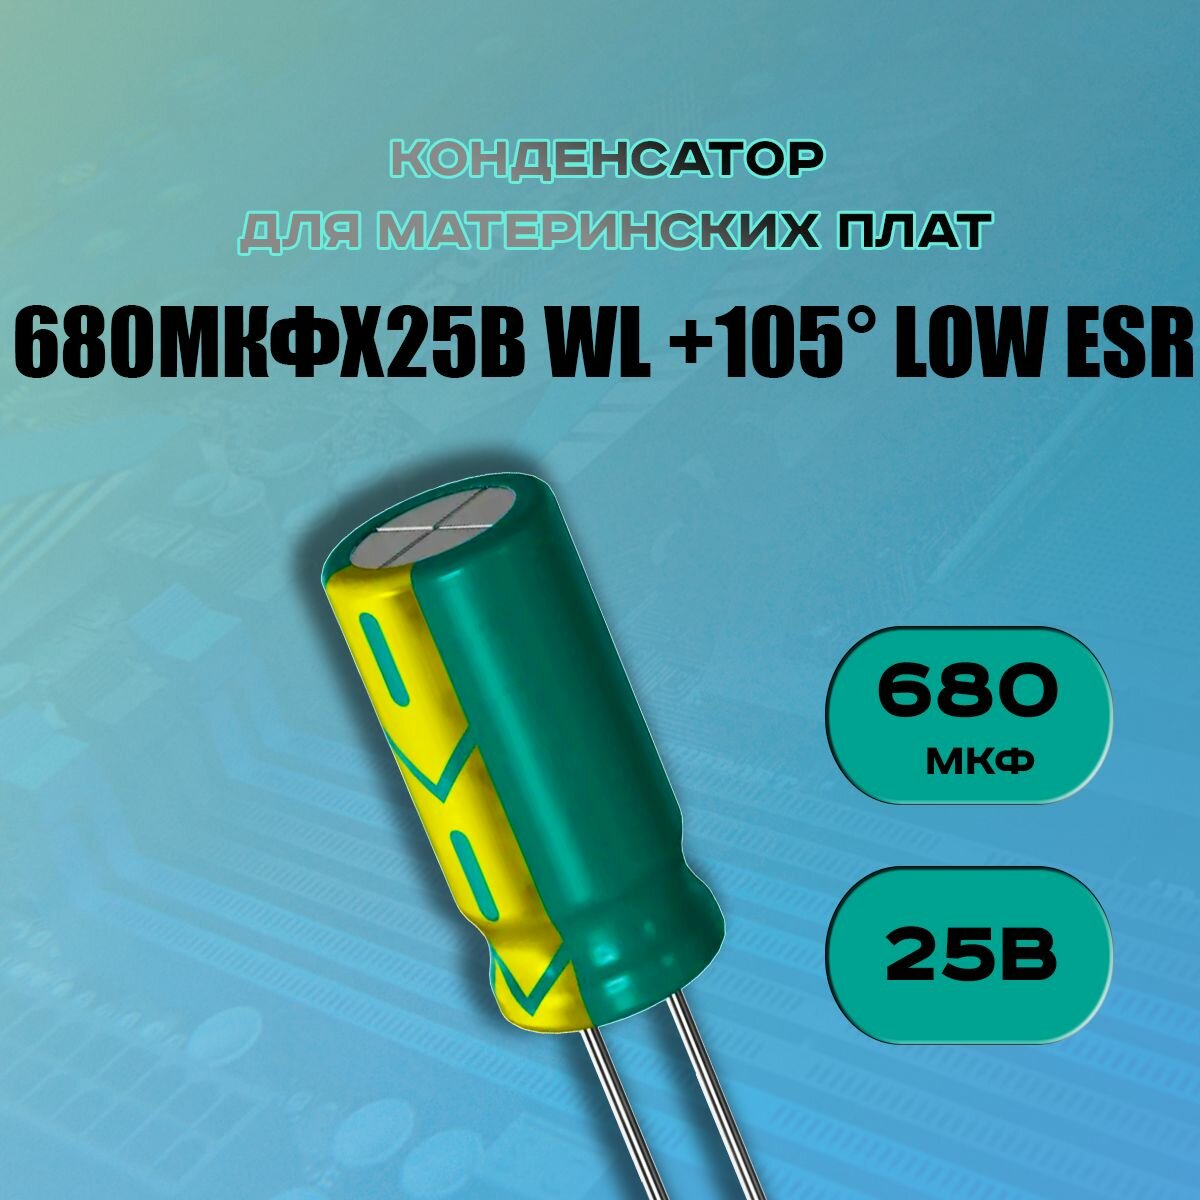 Конденсатор для материнской платы 680 микрофарат 25 Вольт (680uf 25V WL +105 LOW ESR) - 1 шт.